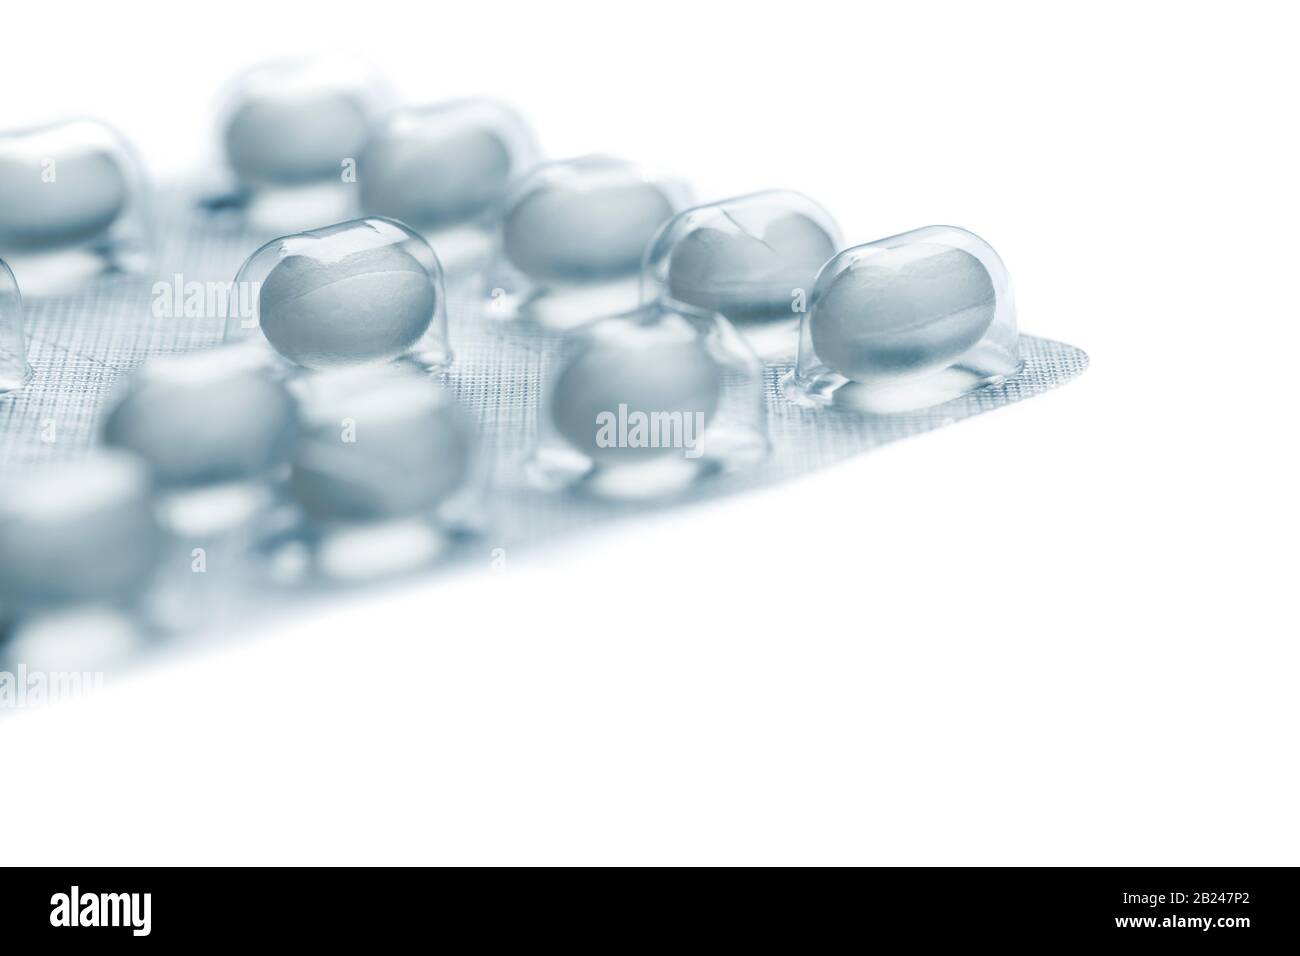 Die geringe Nahaufnahme einer Folienverpackung für Tablettendragees, die auf weißem Hintergrund ohne Schatten und selektive Fokussierung auf ein einzelnes Tablett isoliert sind. Stockfoto